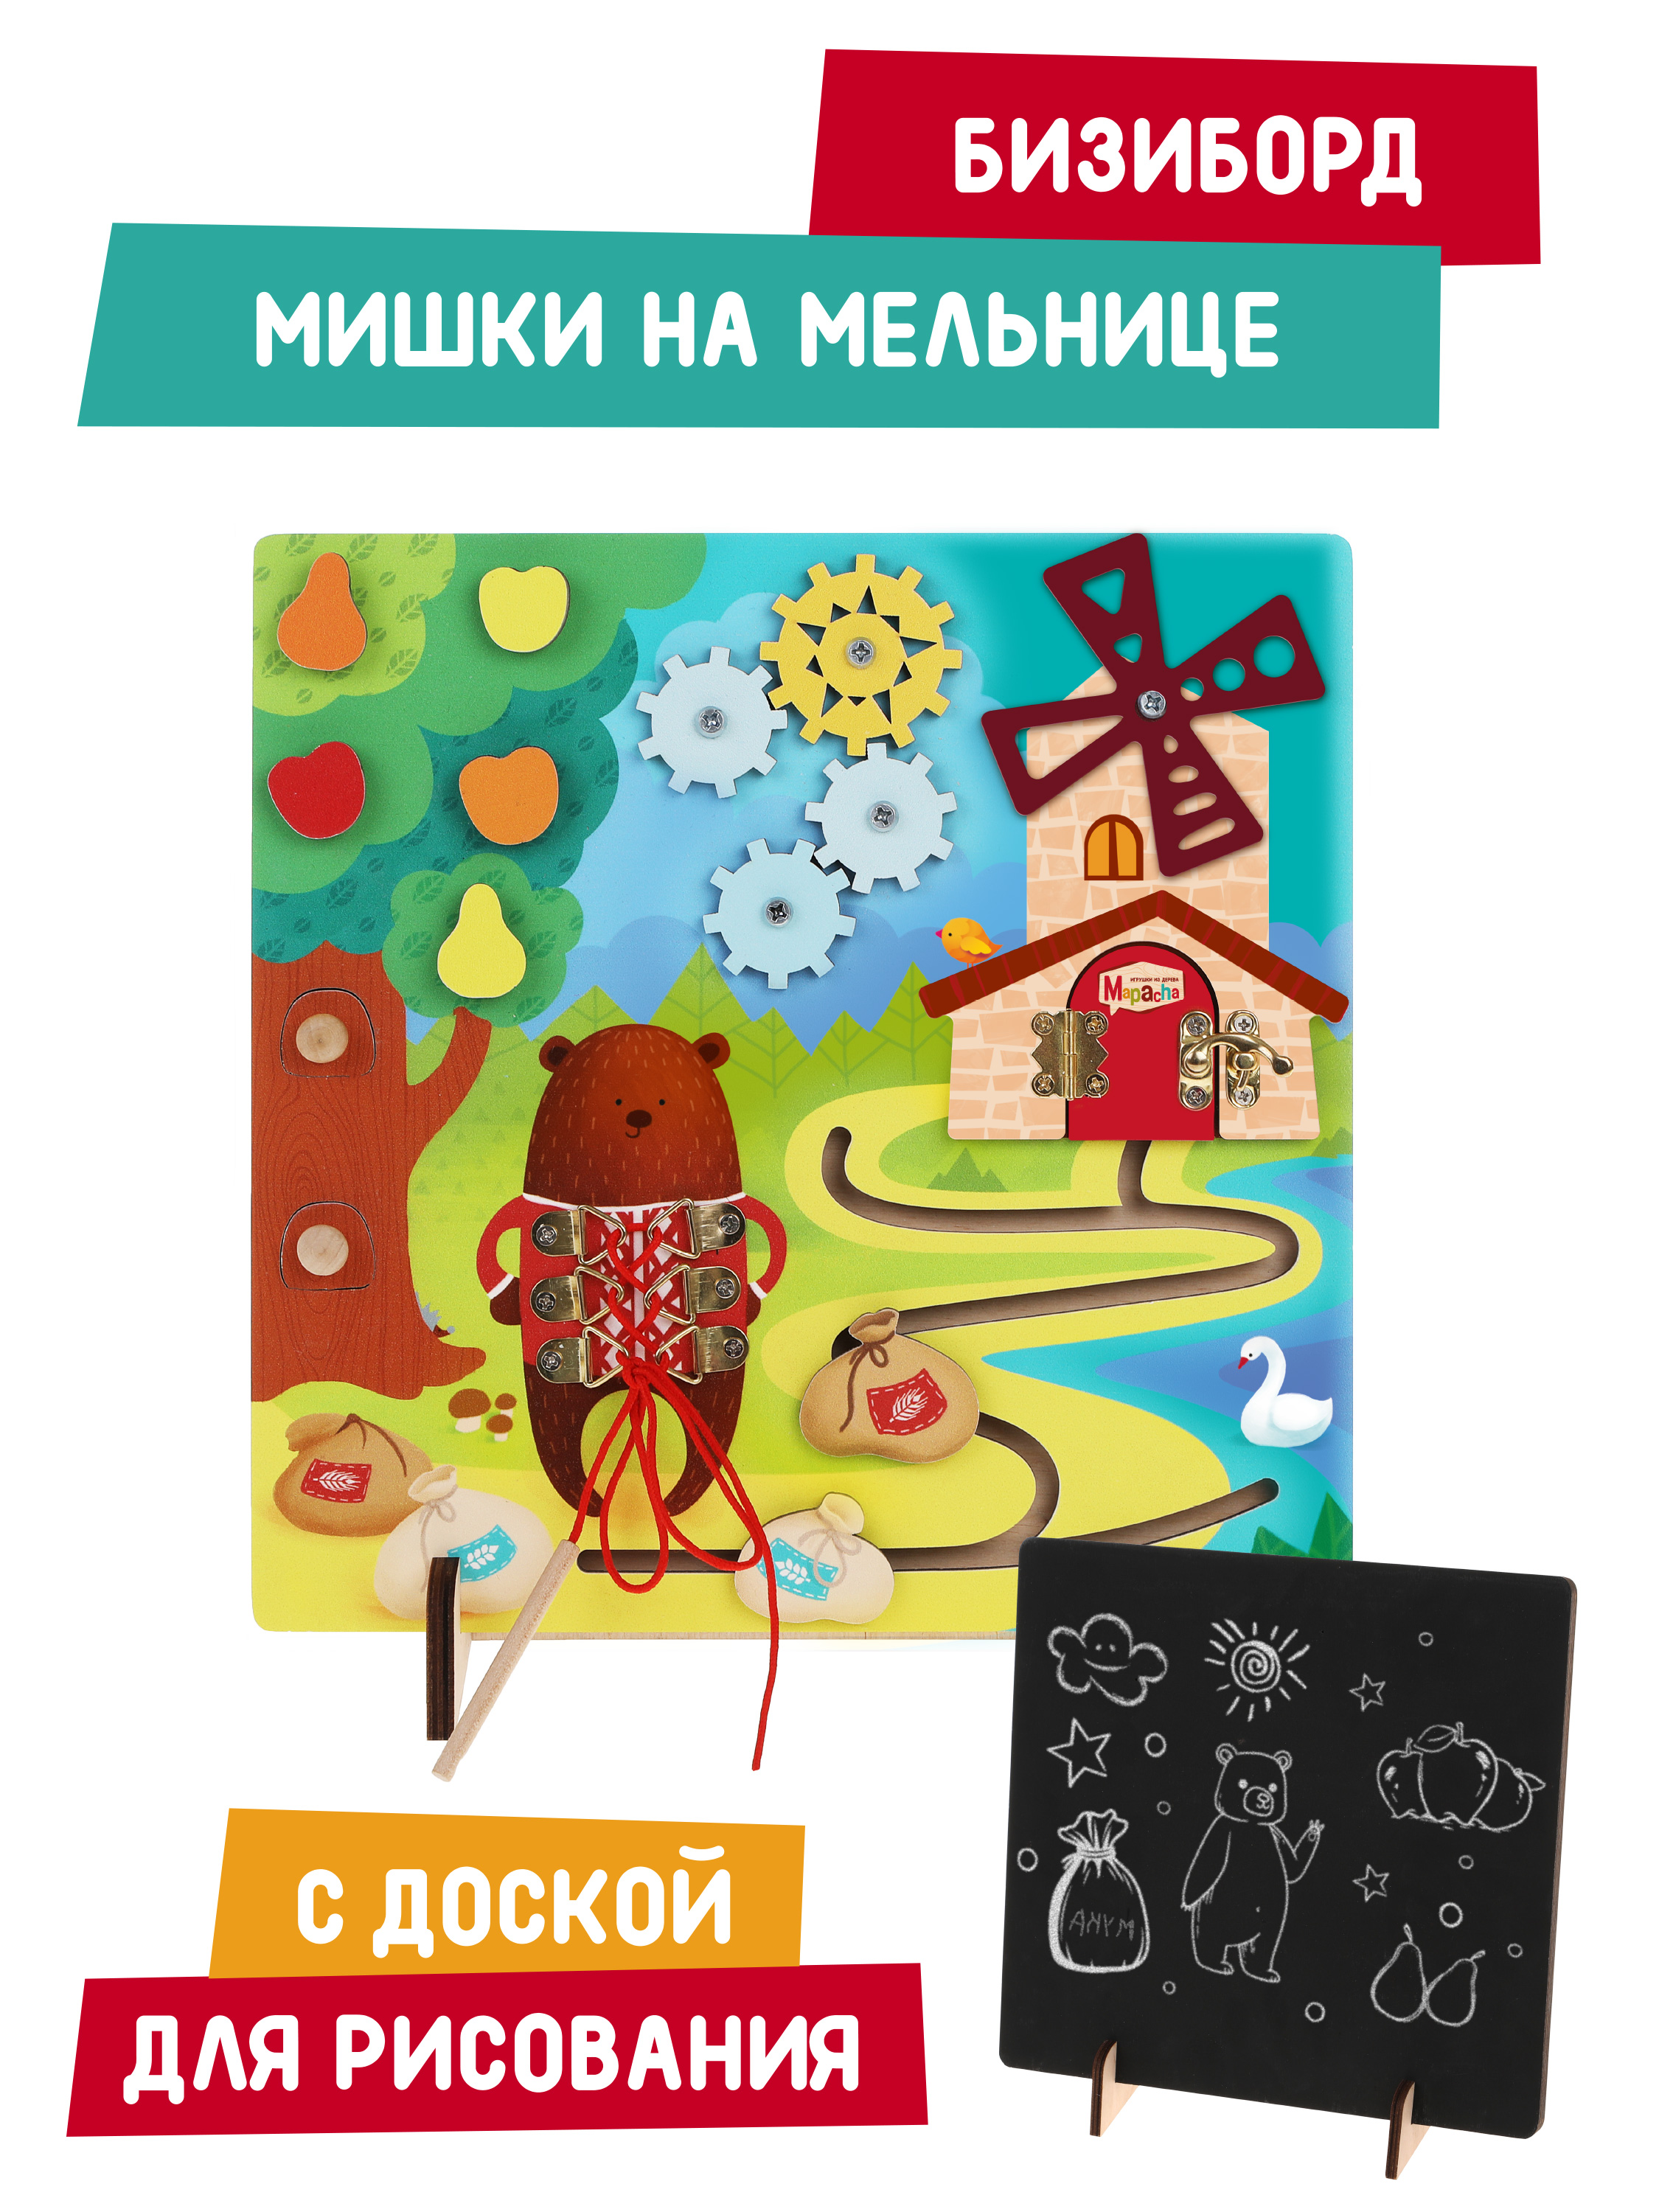 Бизиборд Mapacha Мишкина мельница с доской для рисования и сценарием игры, 962173